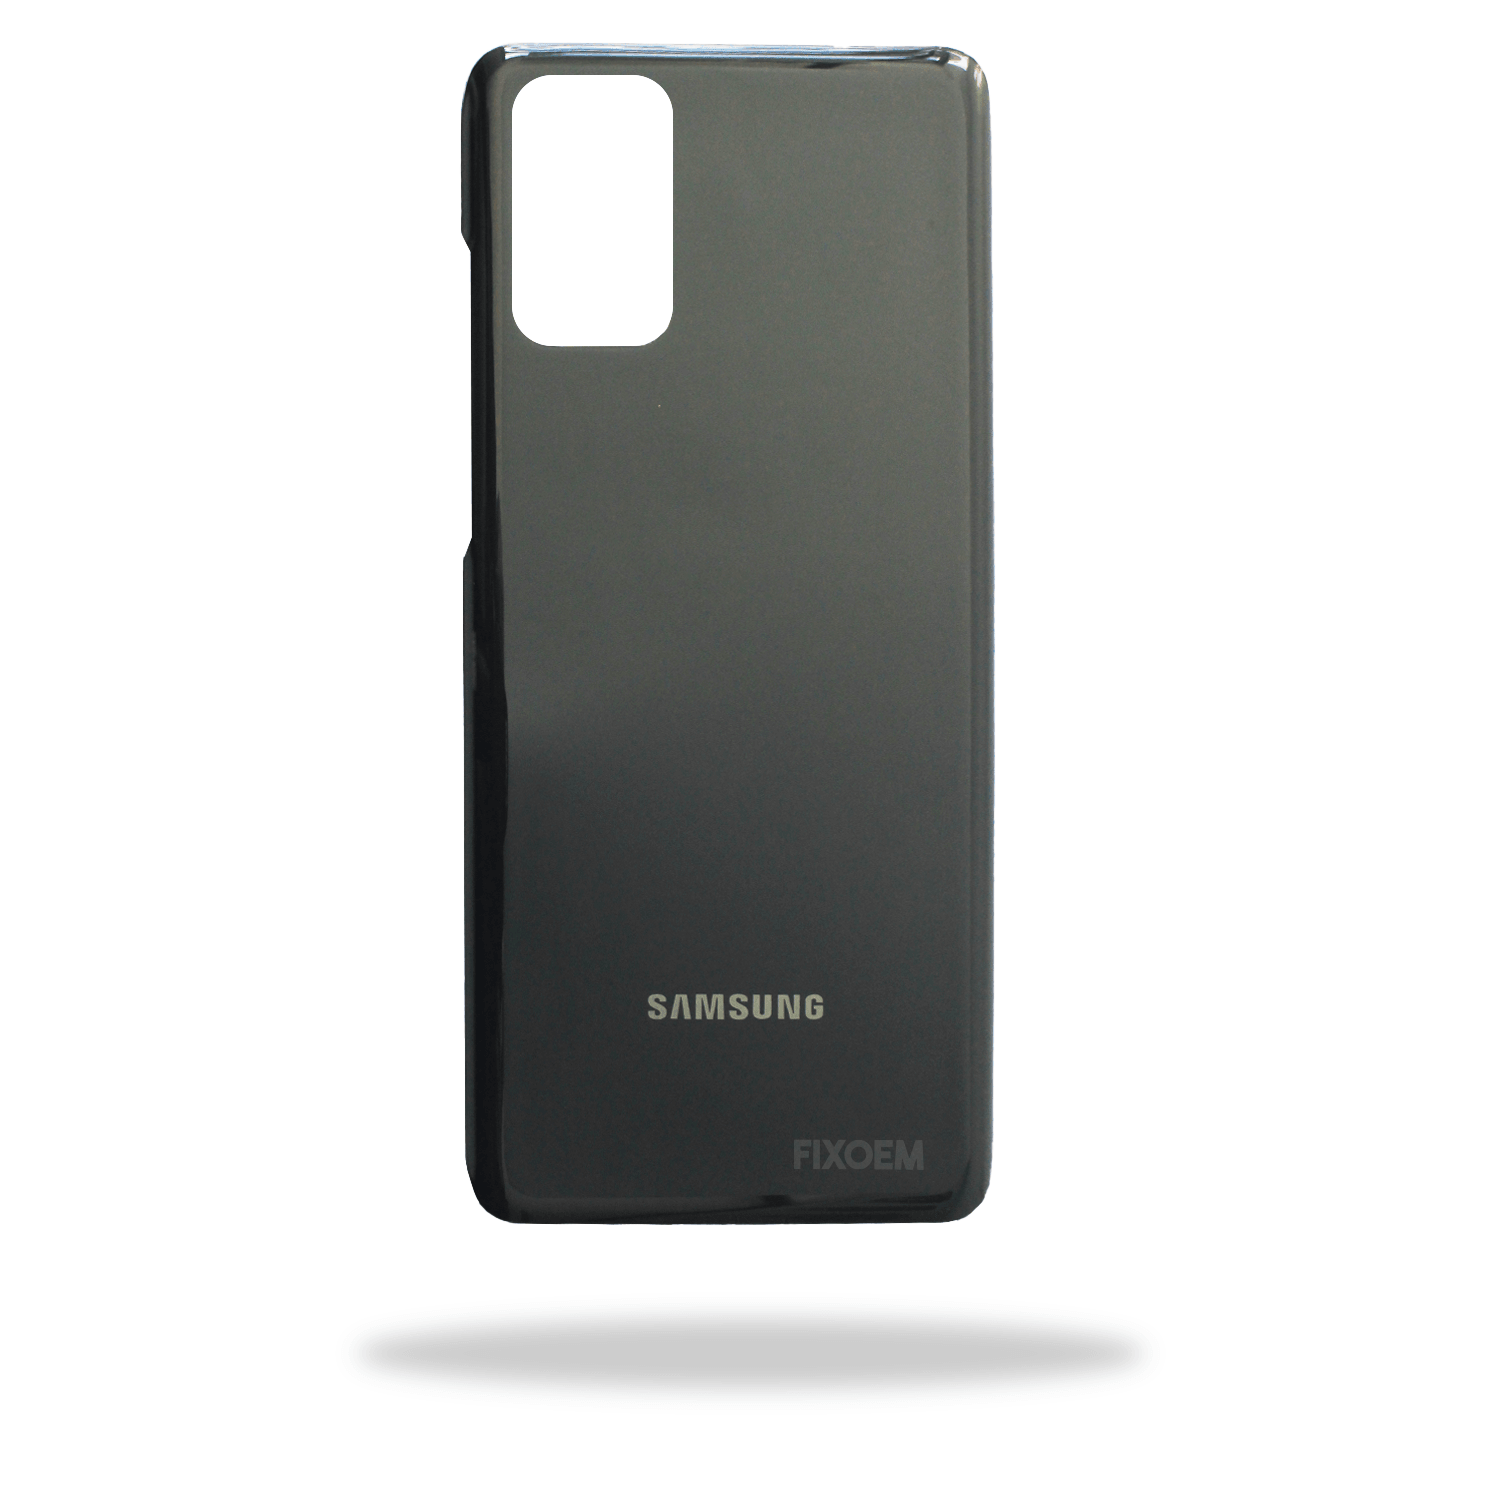 Tapa Trasera Samsung S20 Plus Sm-G985F a solo $ 110.00 Refaccion y puestos celulares, refurbish y microelectronica.- FixOEM